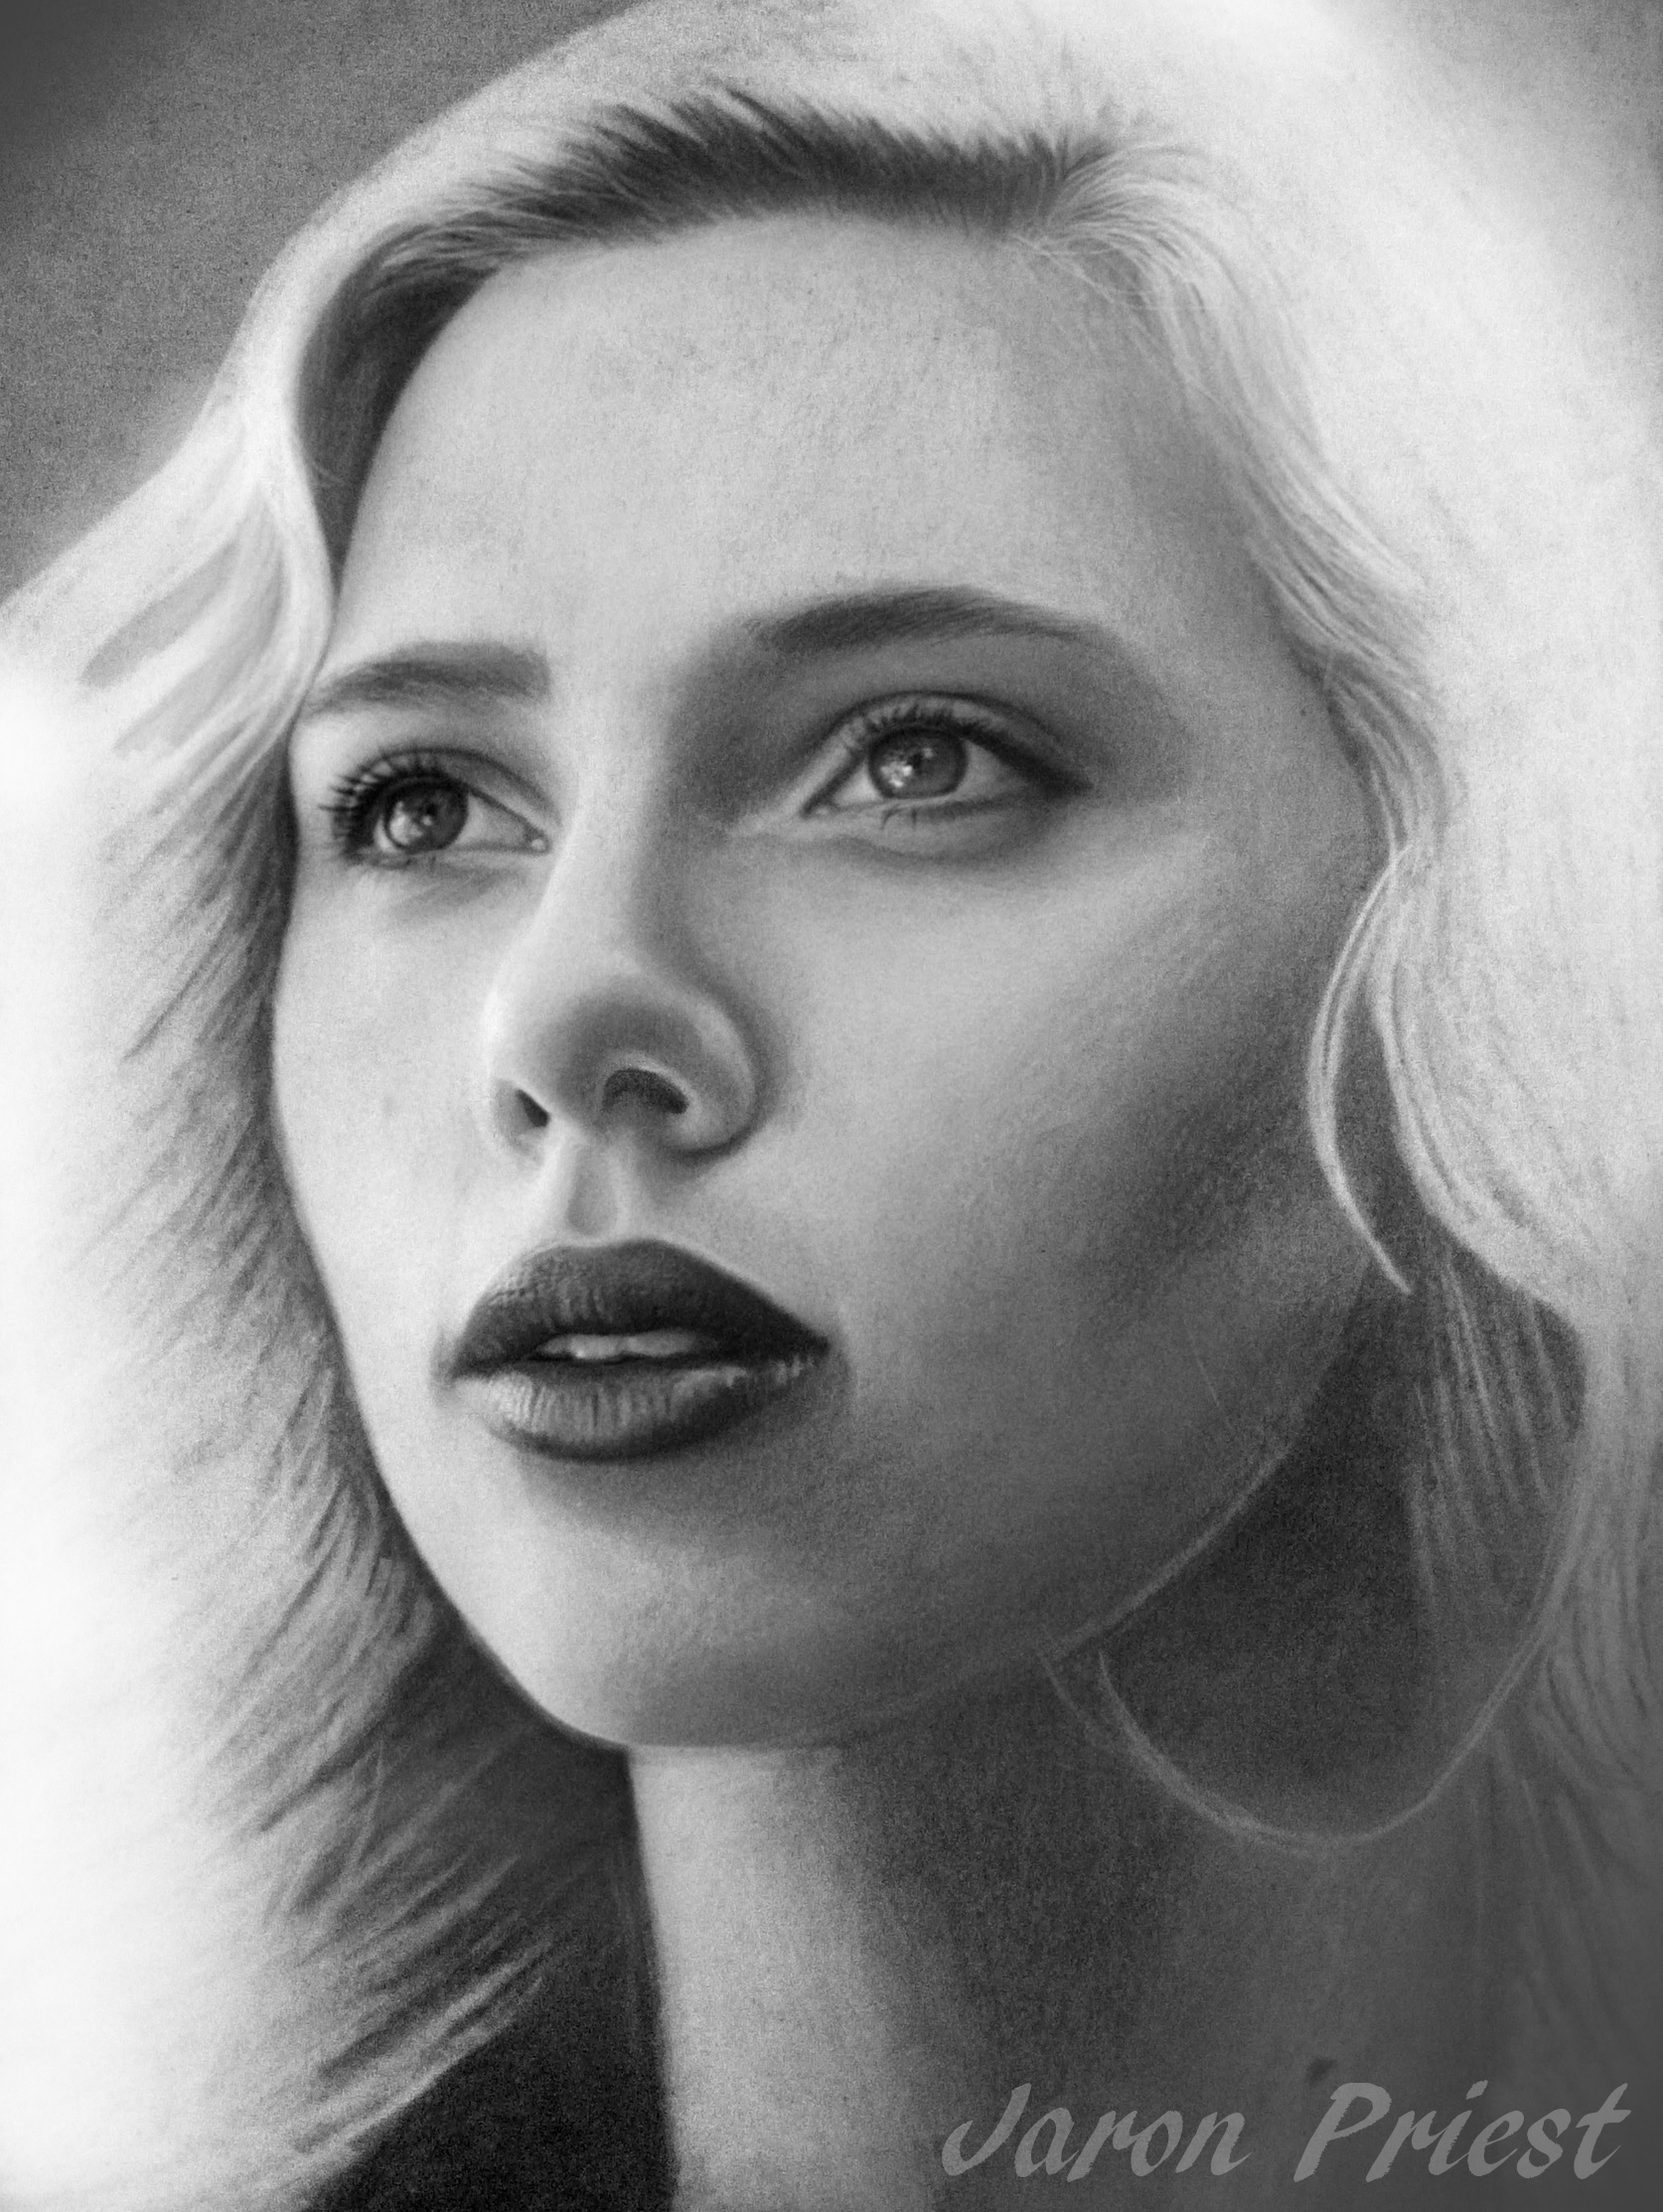 Scarlett Johansson Artist: Jaron Priest